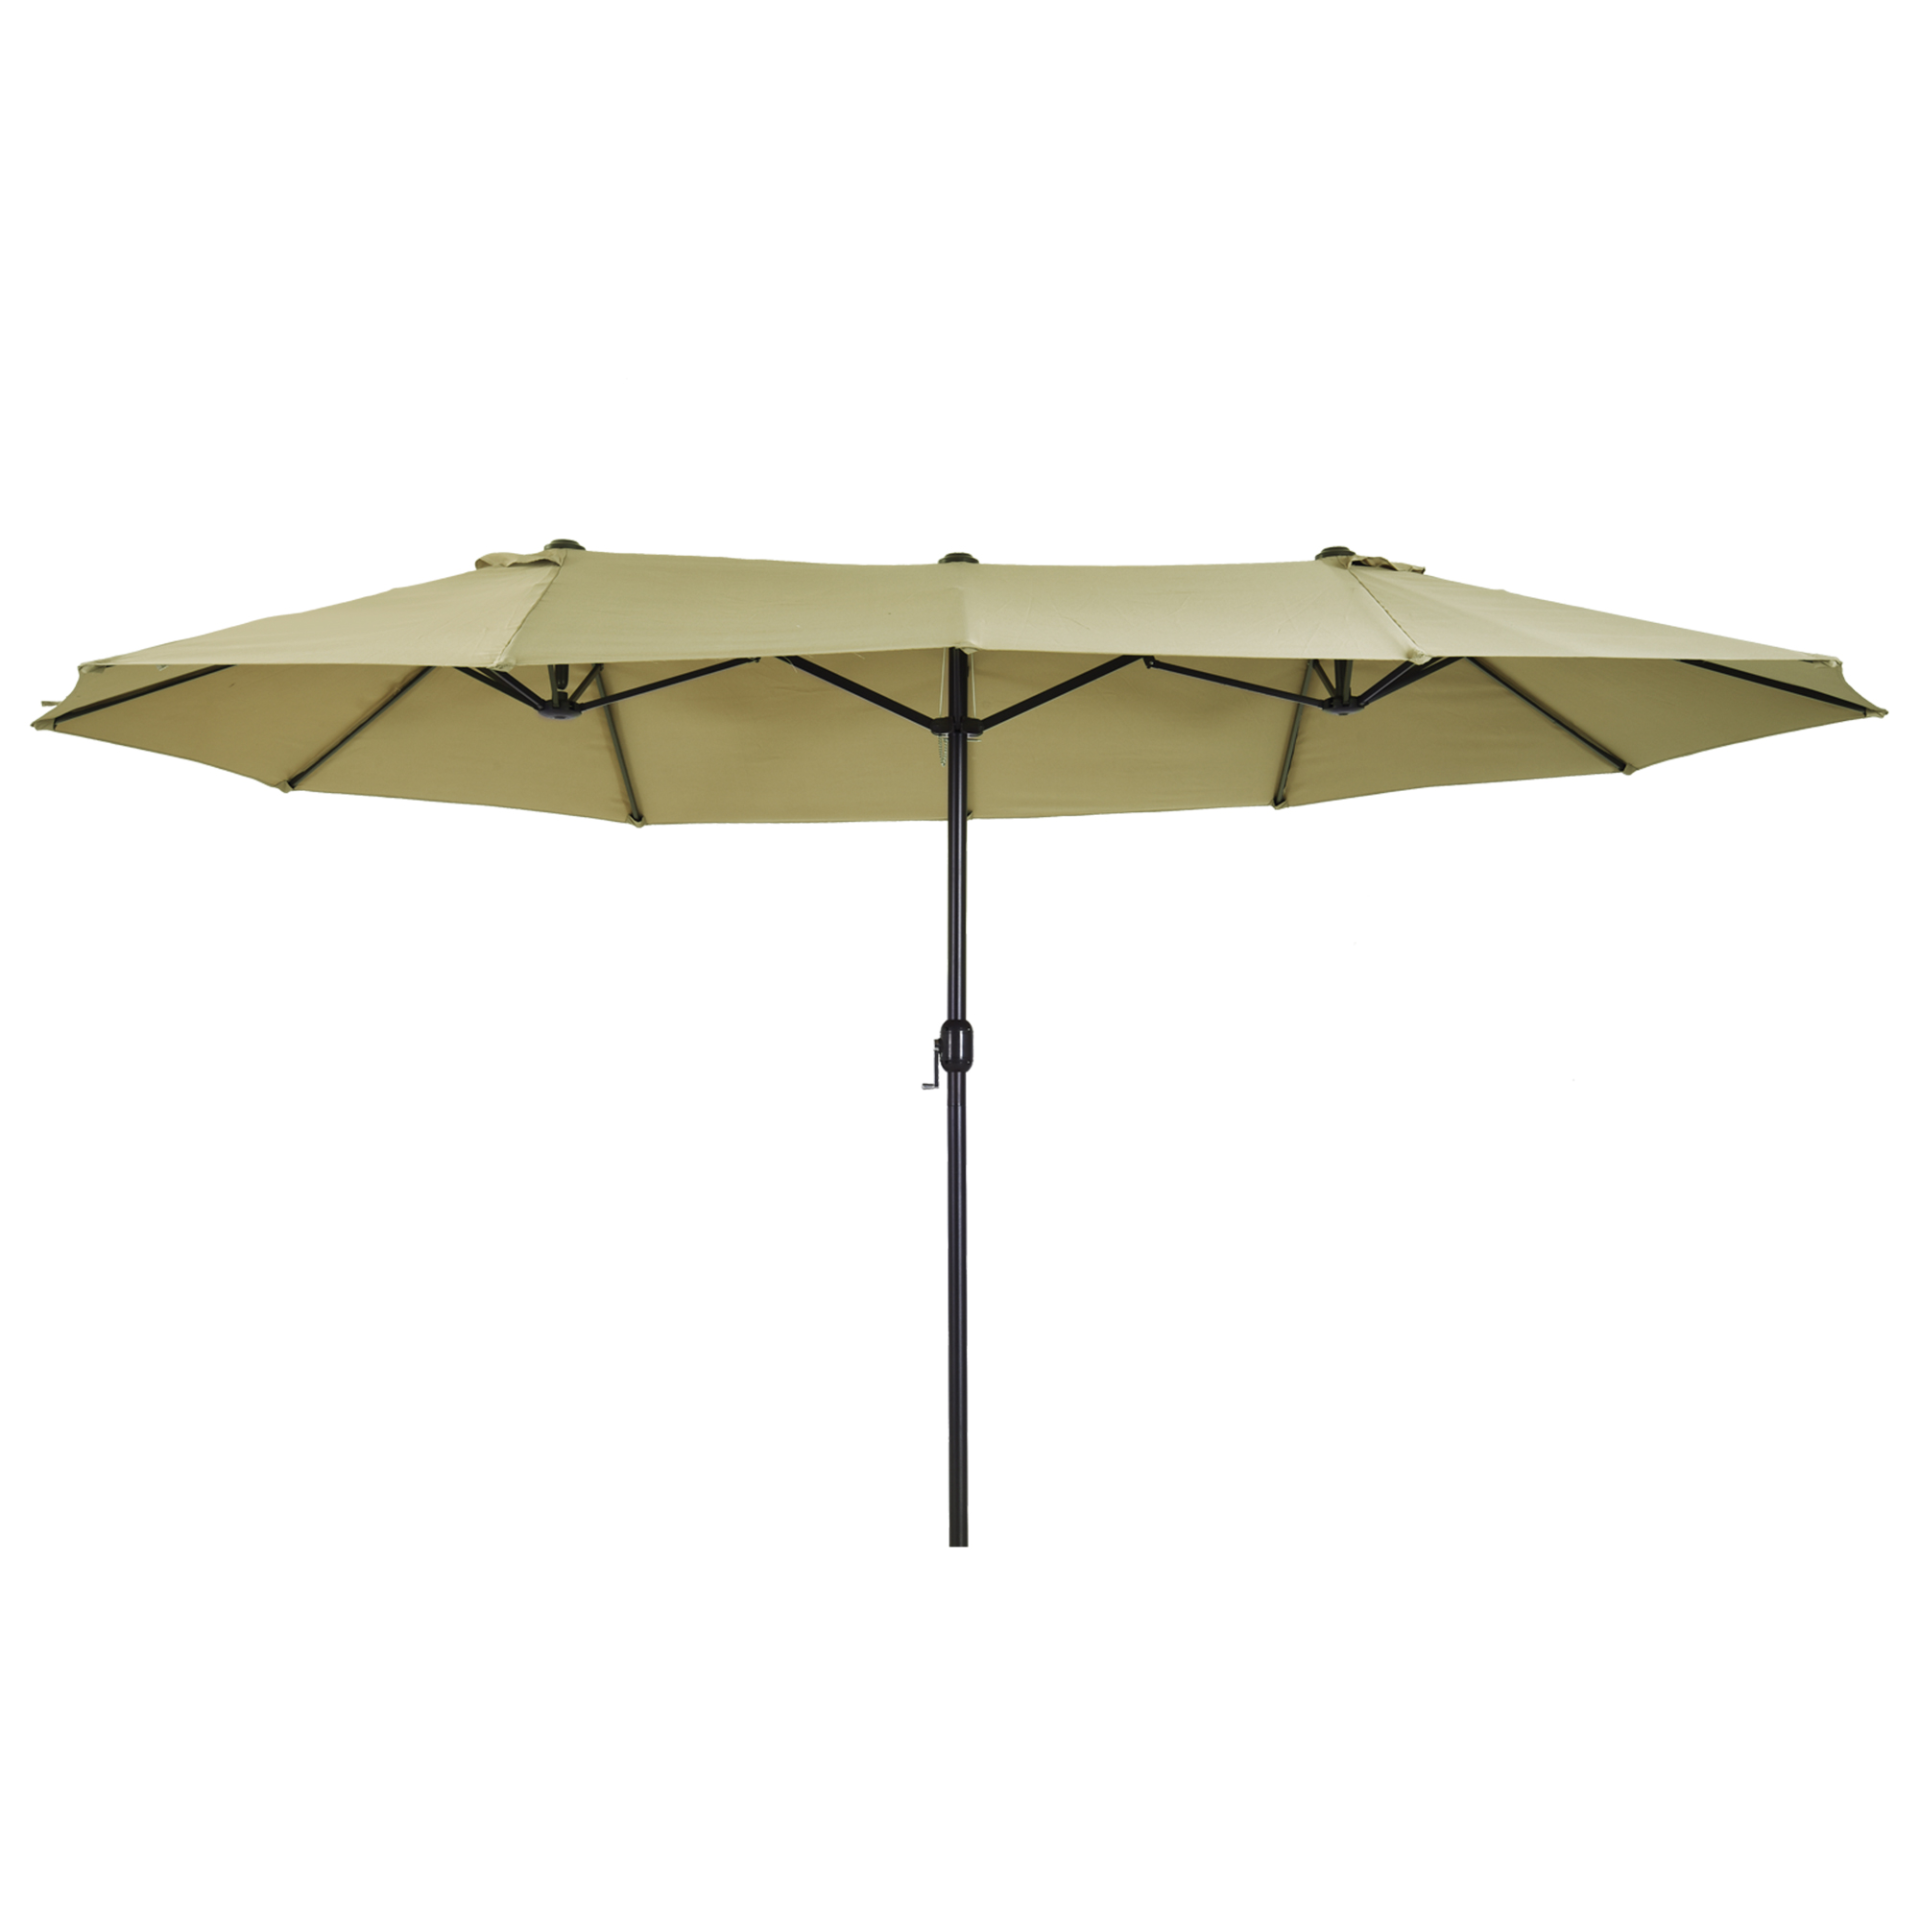 Outsunny 4.6m Garden Parasol Double-Sided Sun Umbrella Patio Market Shelter Canopy Shade Outdoor Tan - NO BASE